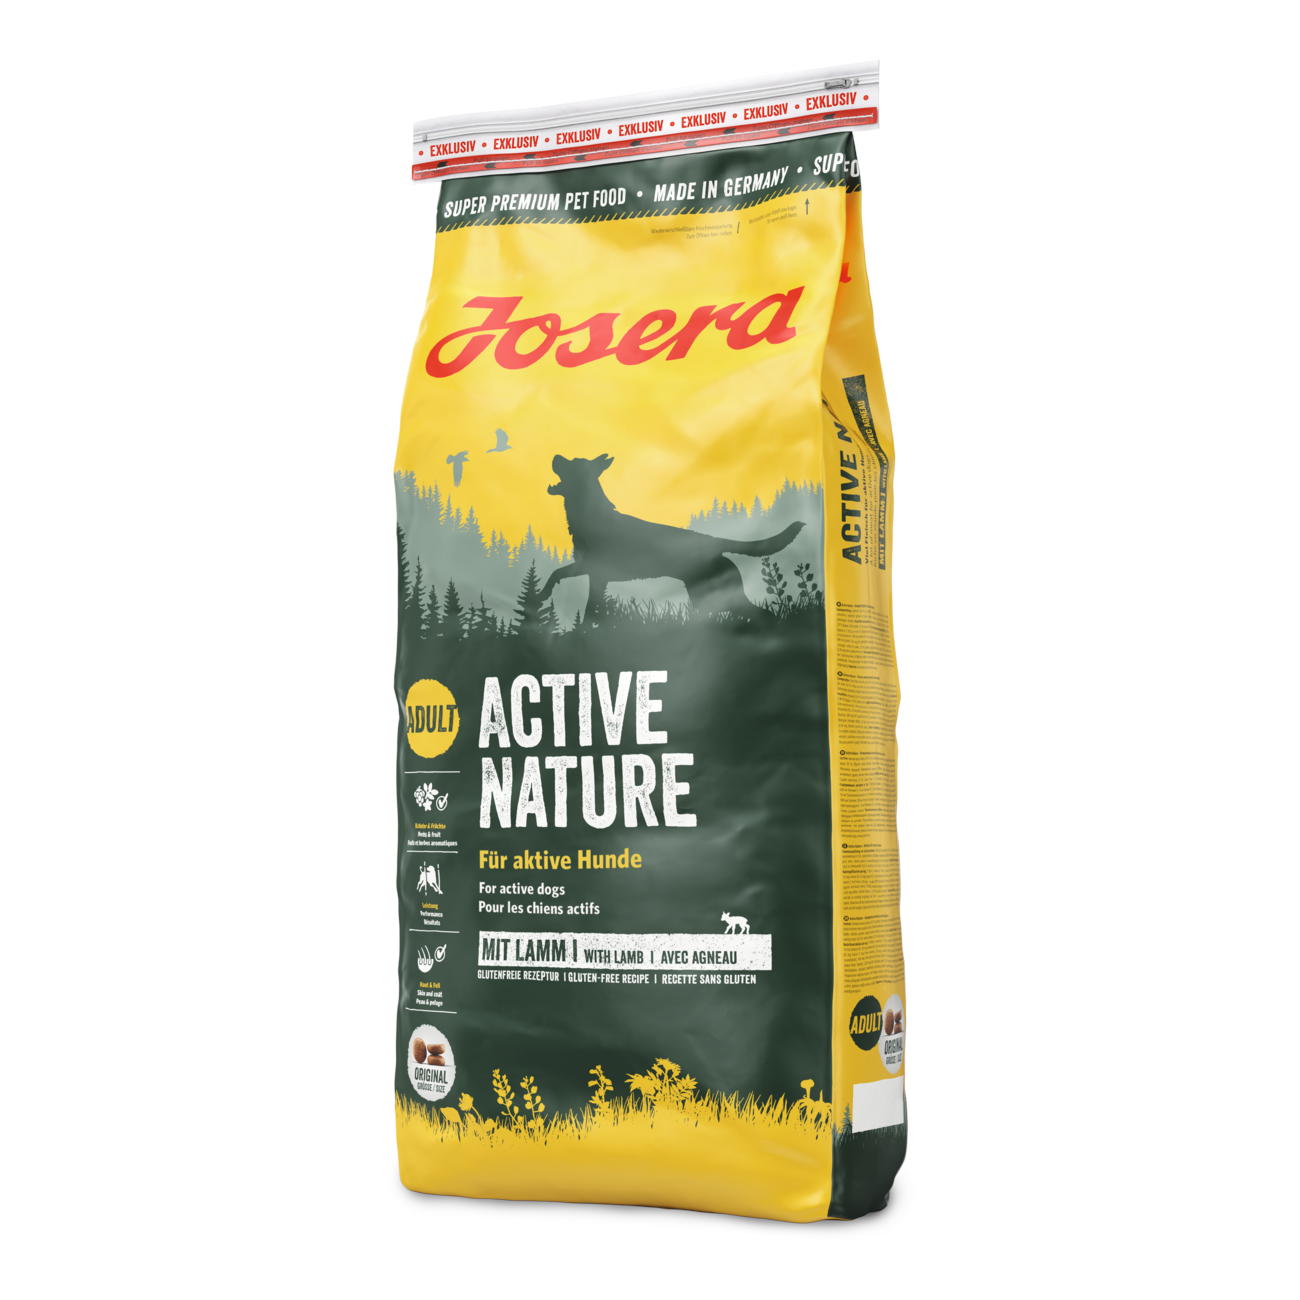 Josera Active Nature 15kg | Futtermittel Online Shop Mühle Gladen